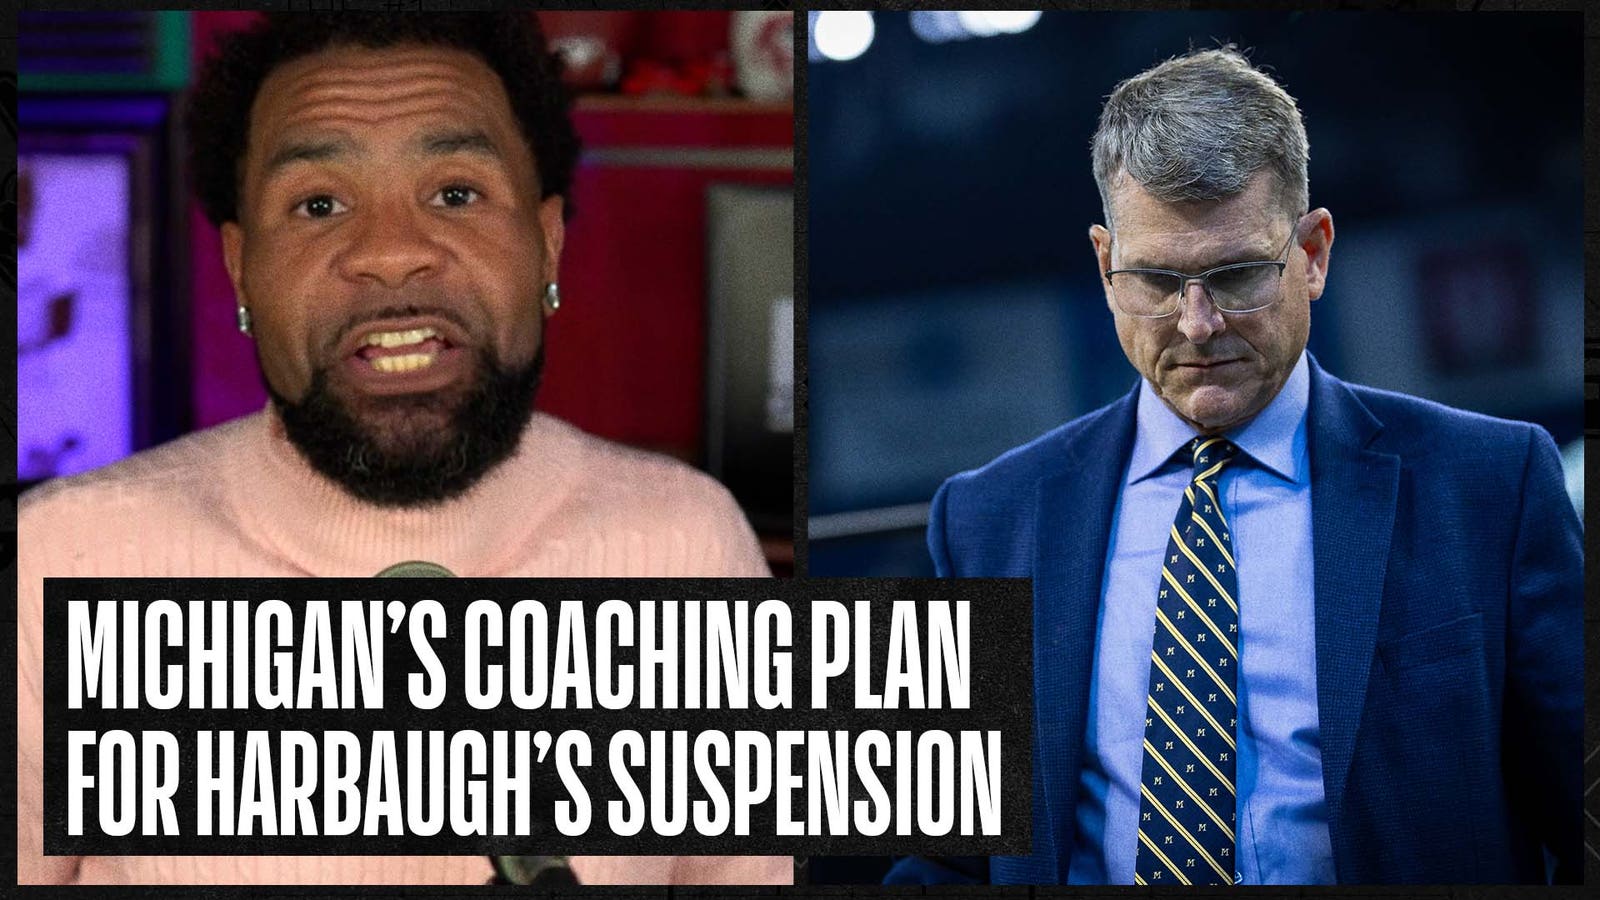 Michigan's coaching plan during Harbaugh's 3-game suspension